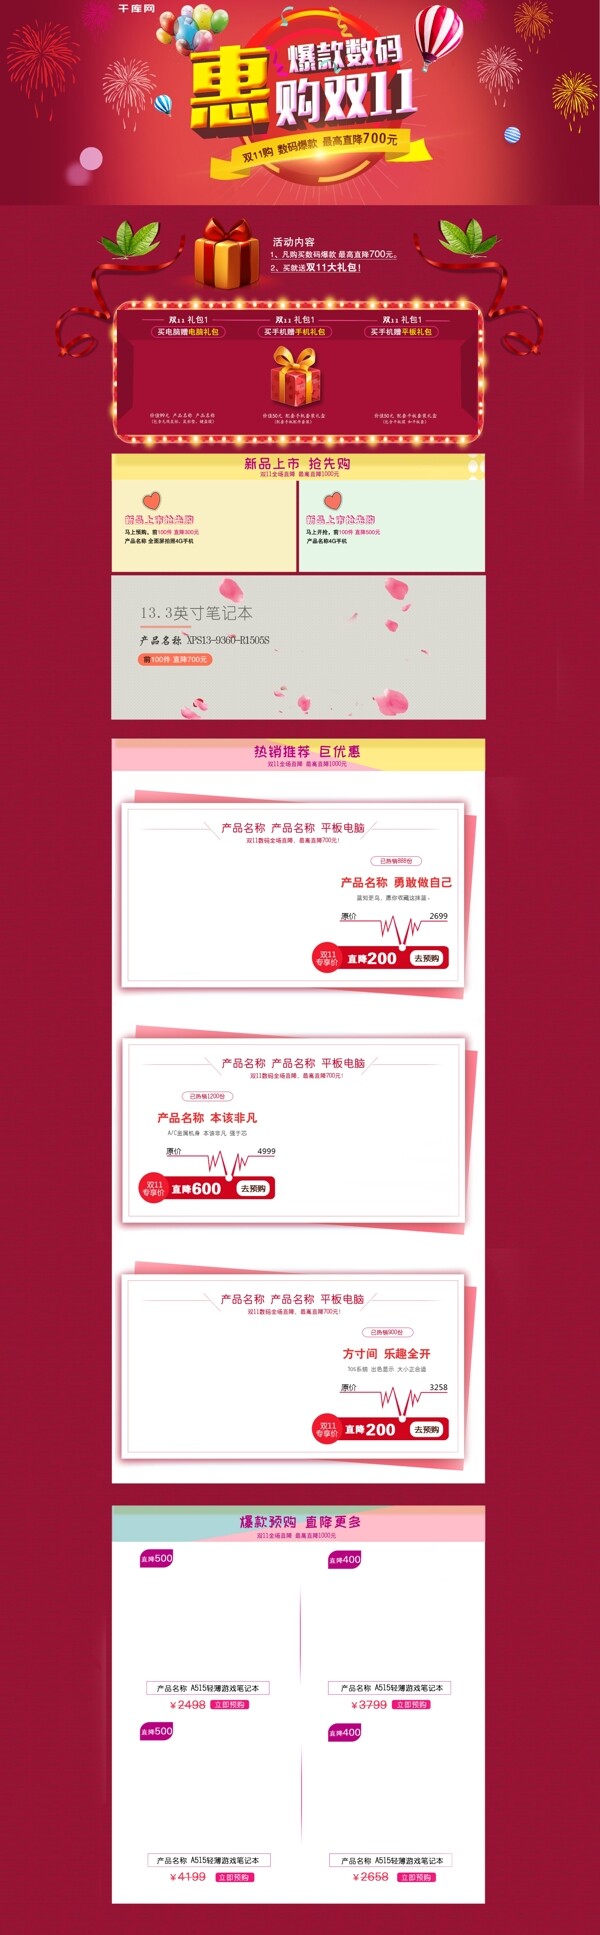 红色浪漫时尚数码促销banner